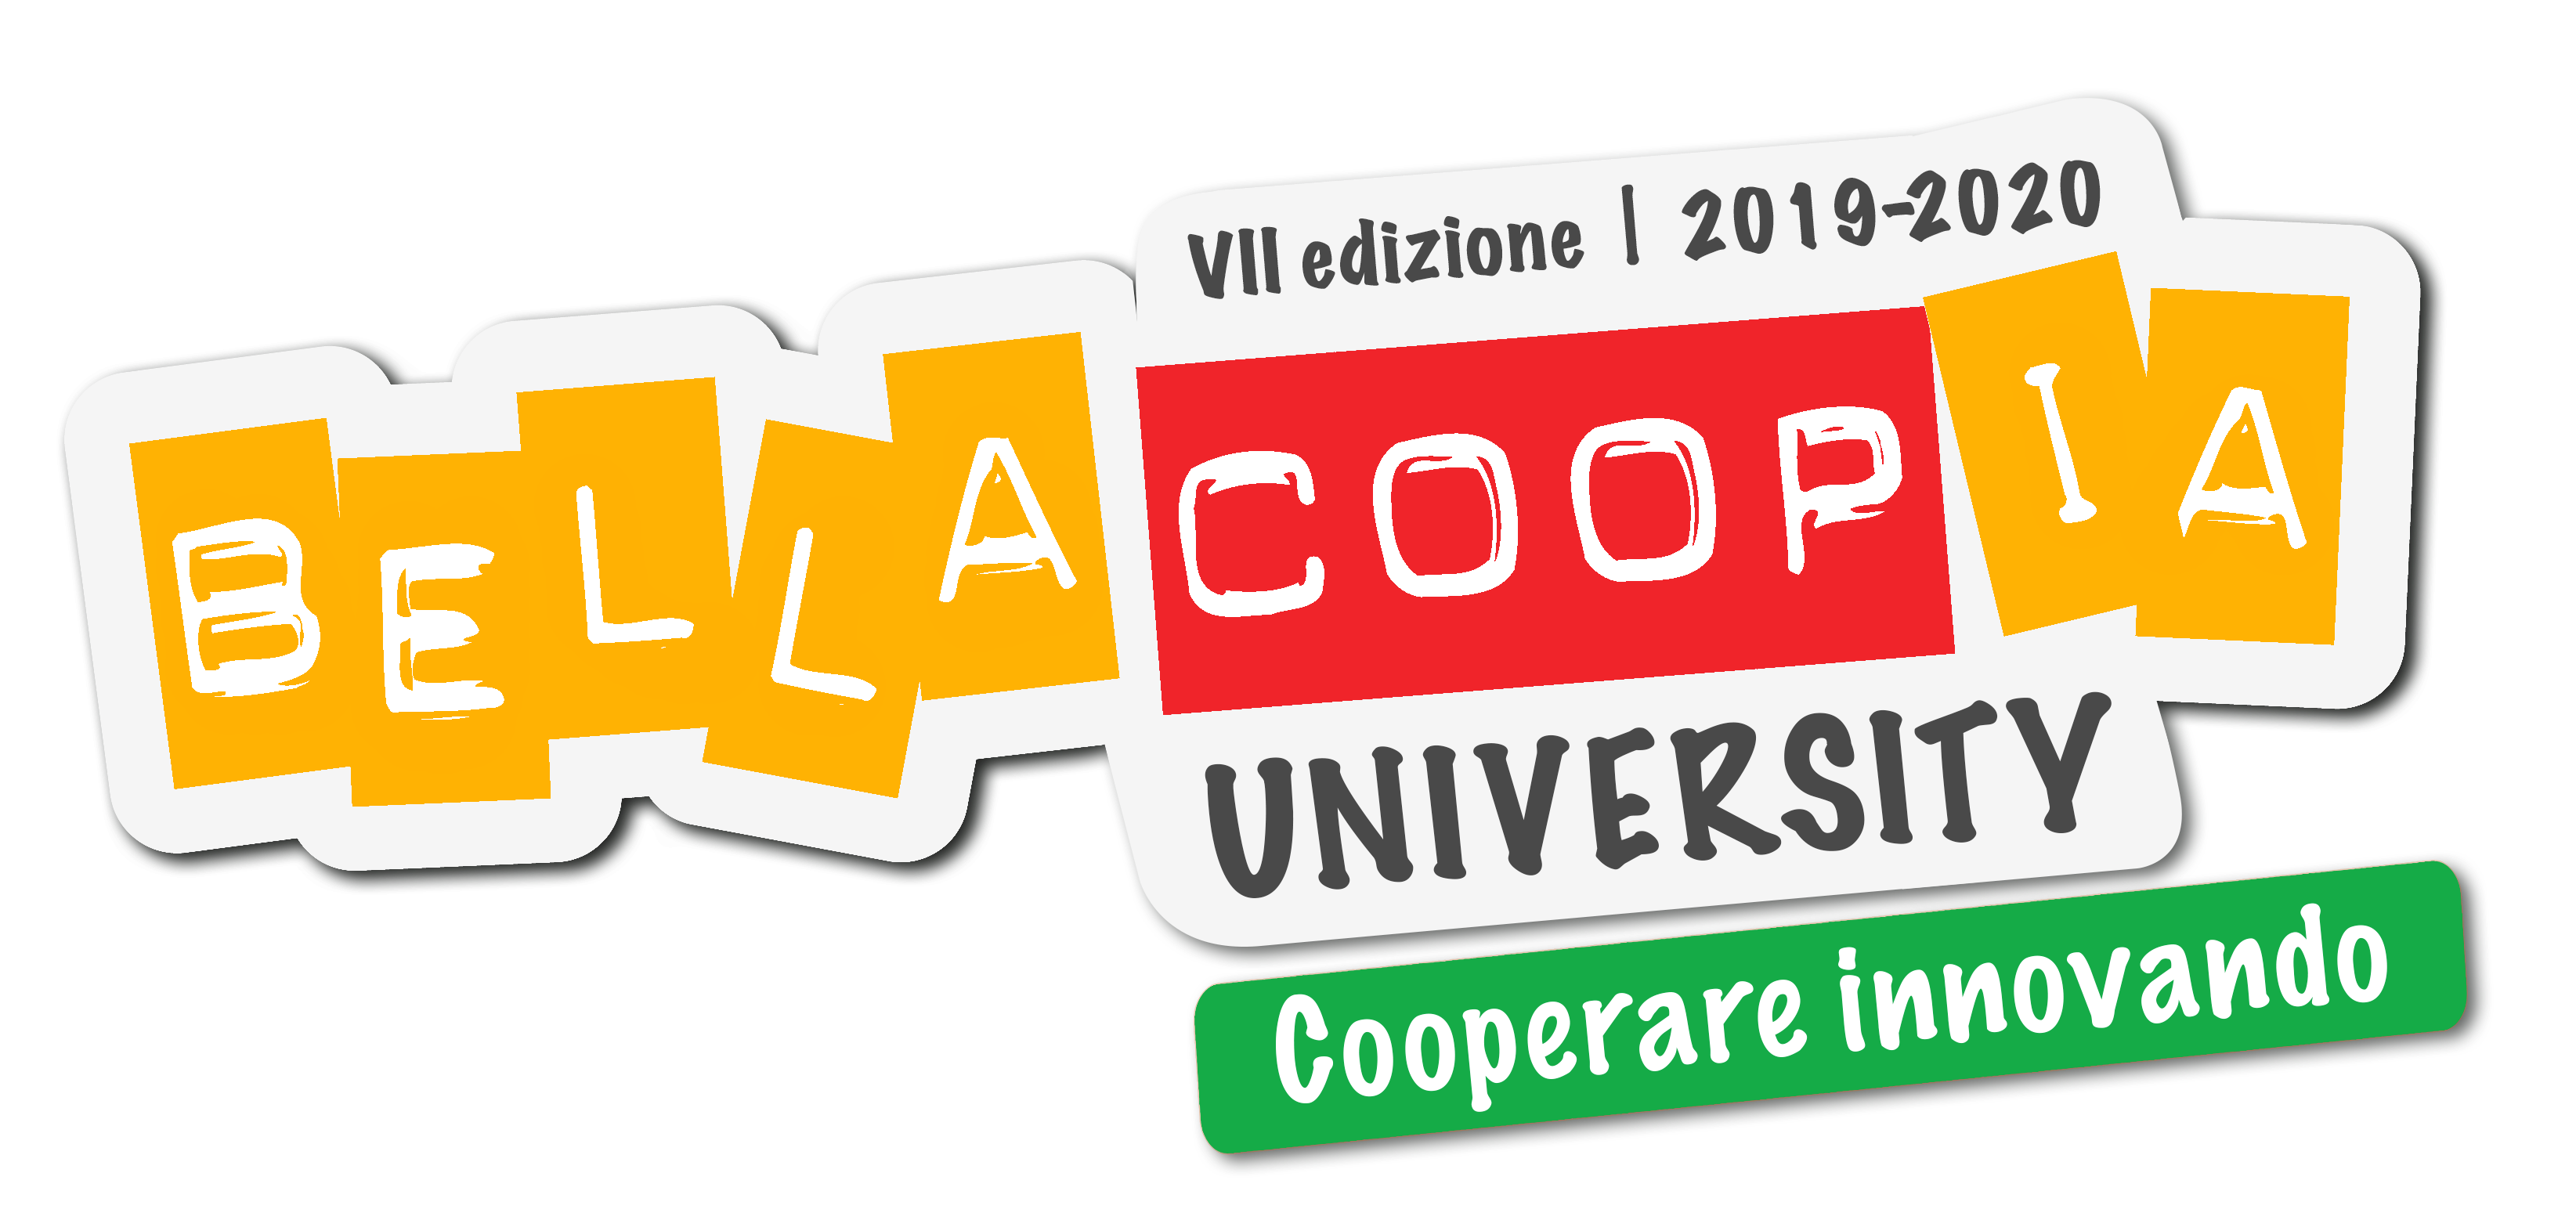 University logo 2019-2020